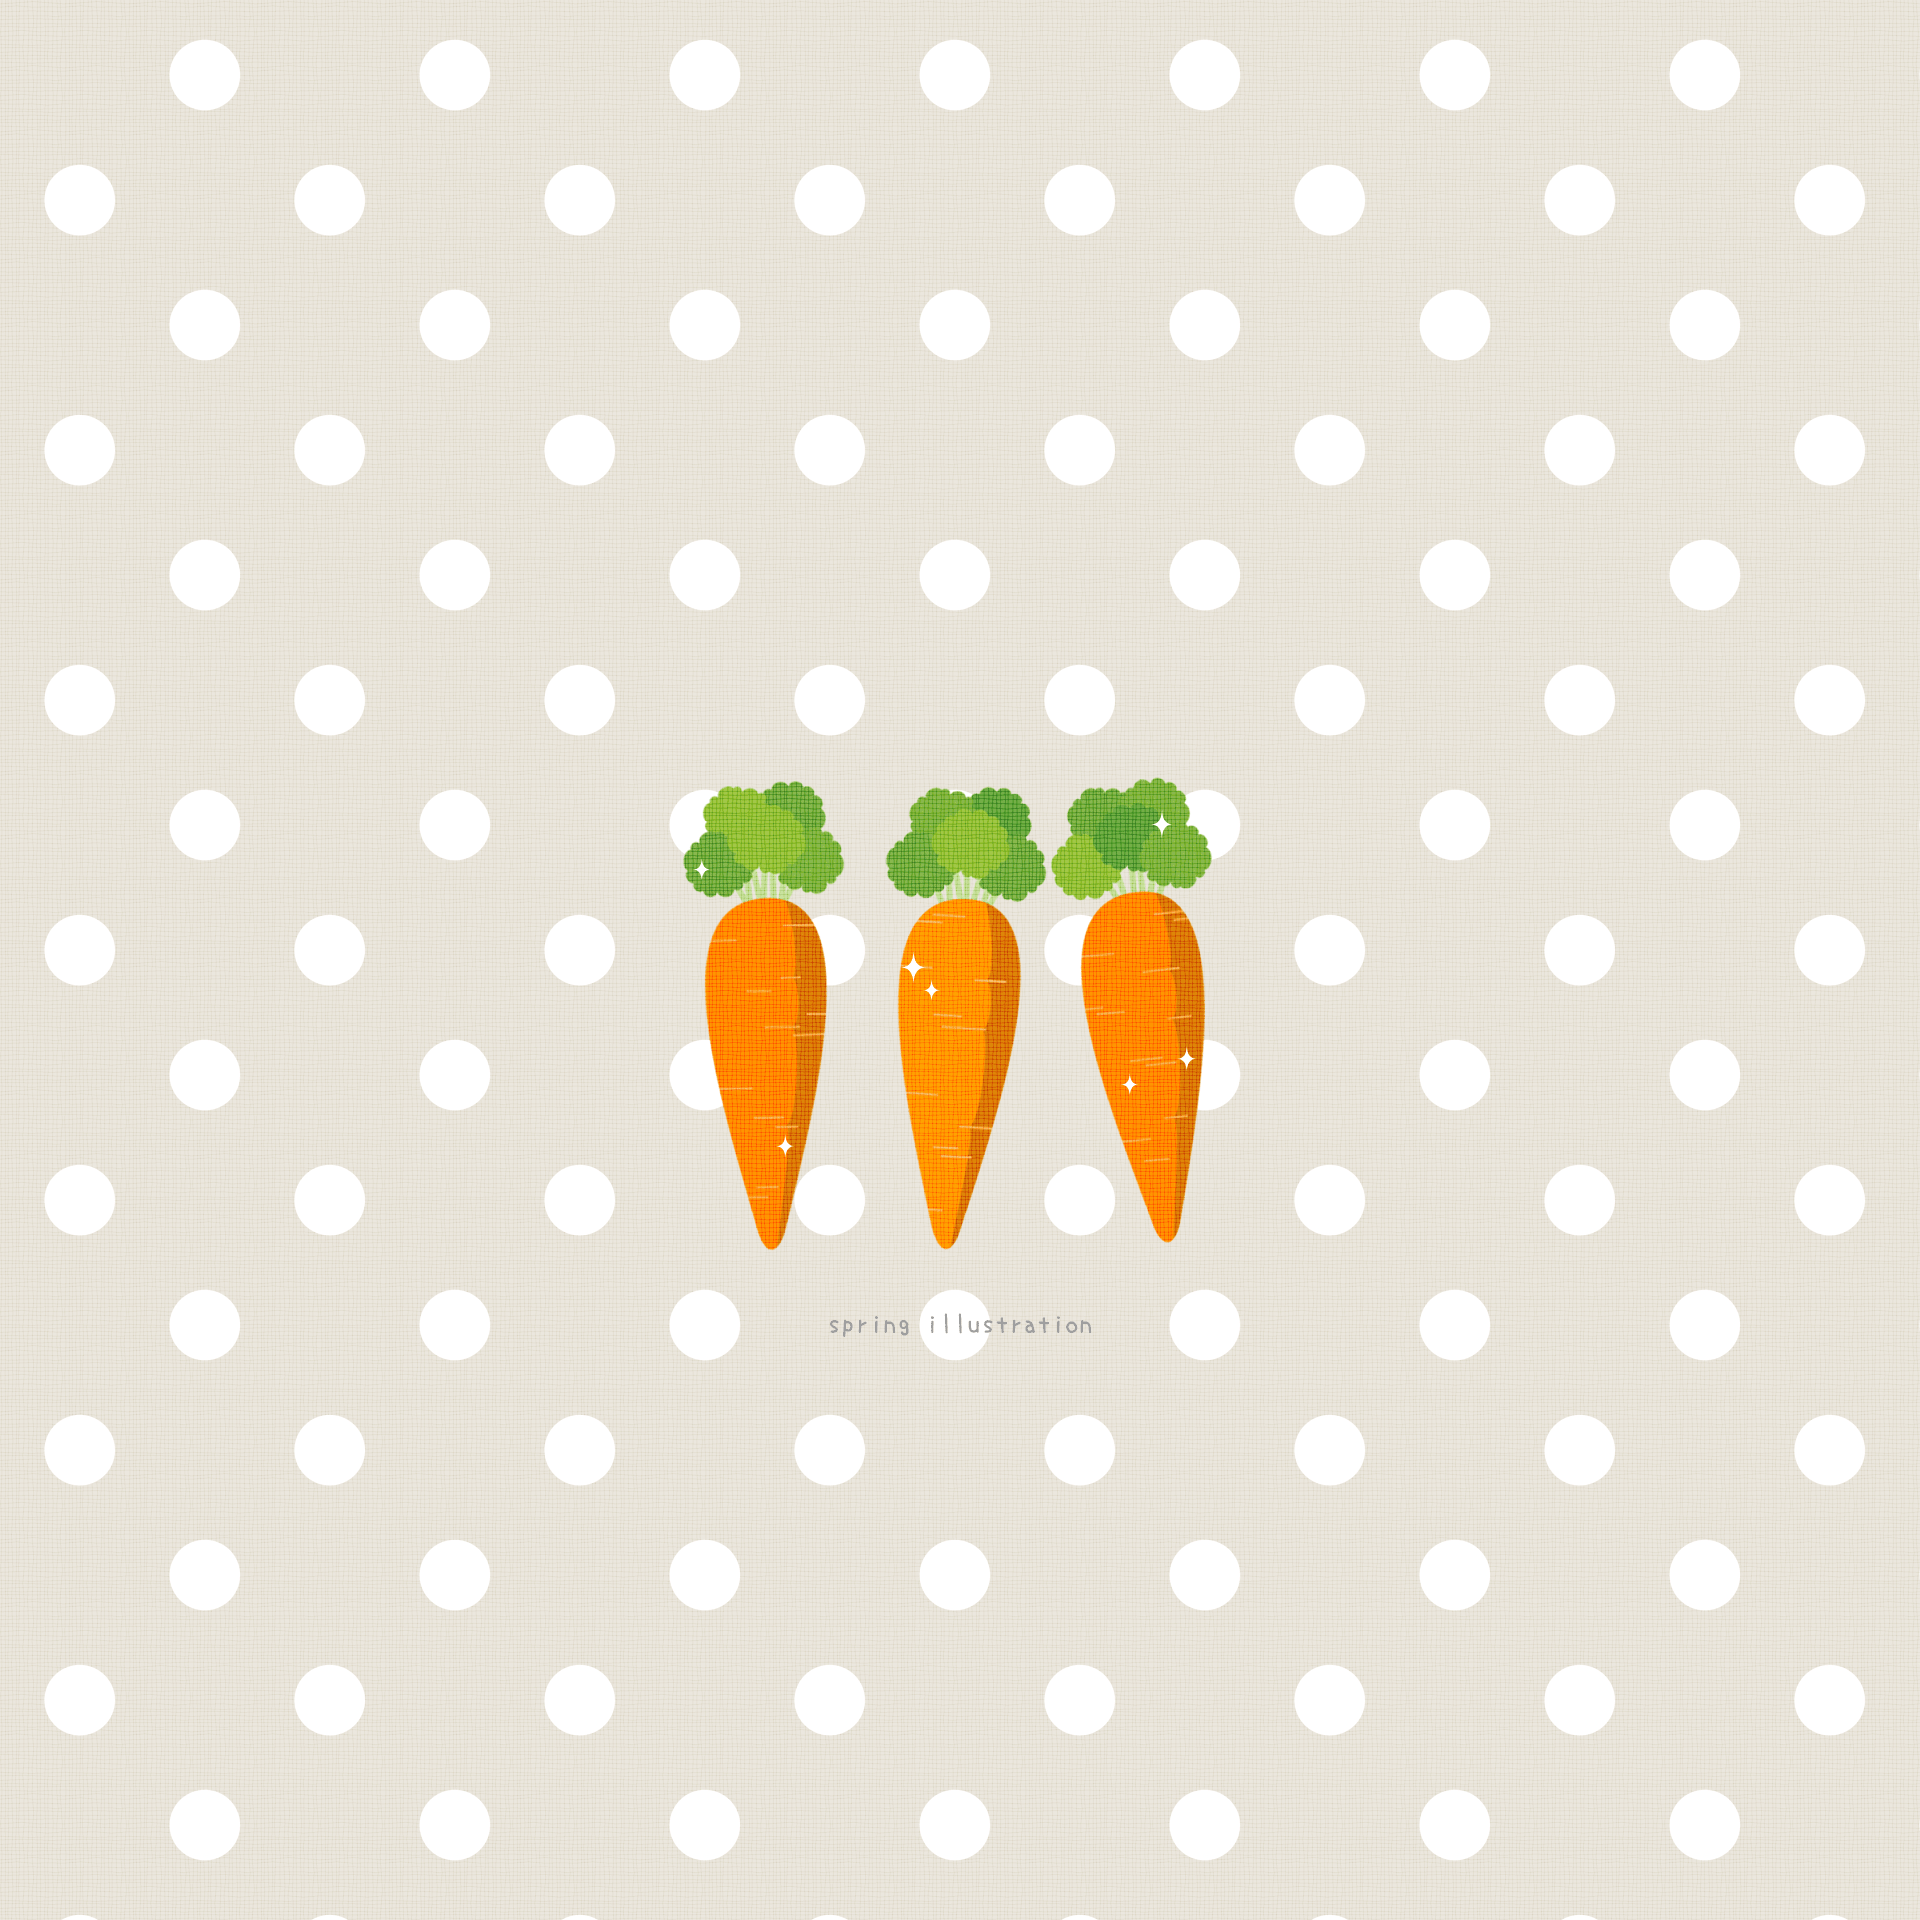 【にんじん】野菜のイラストましかく壁紙・背景